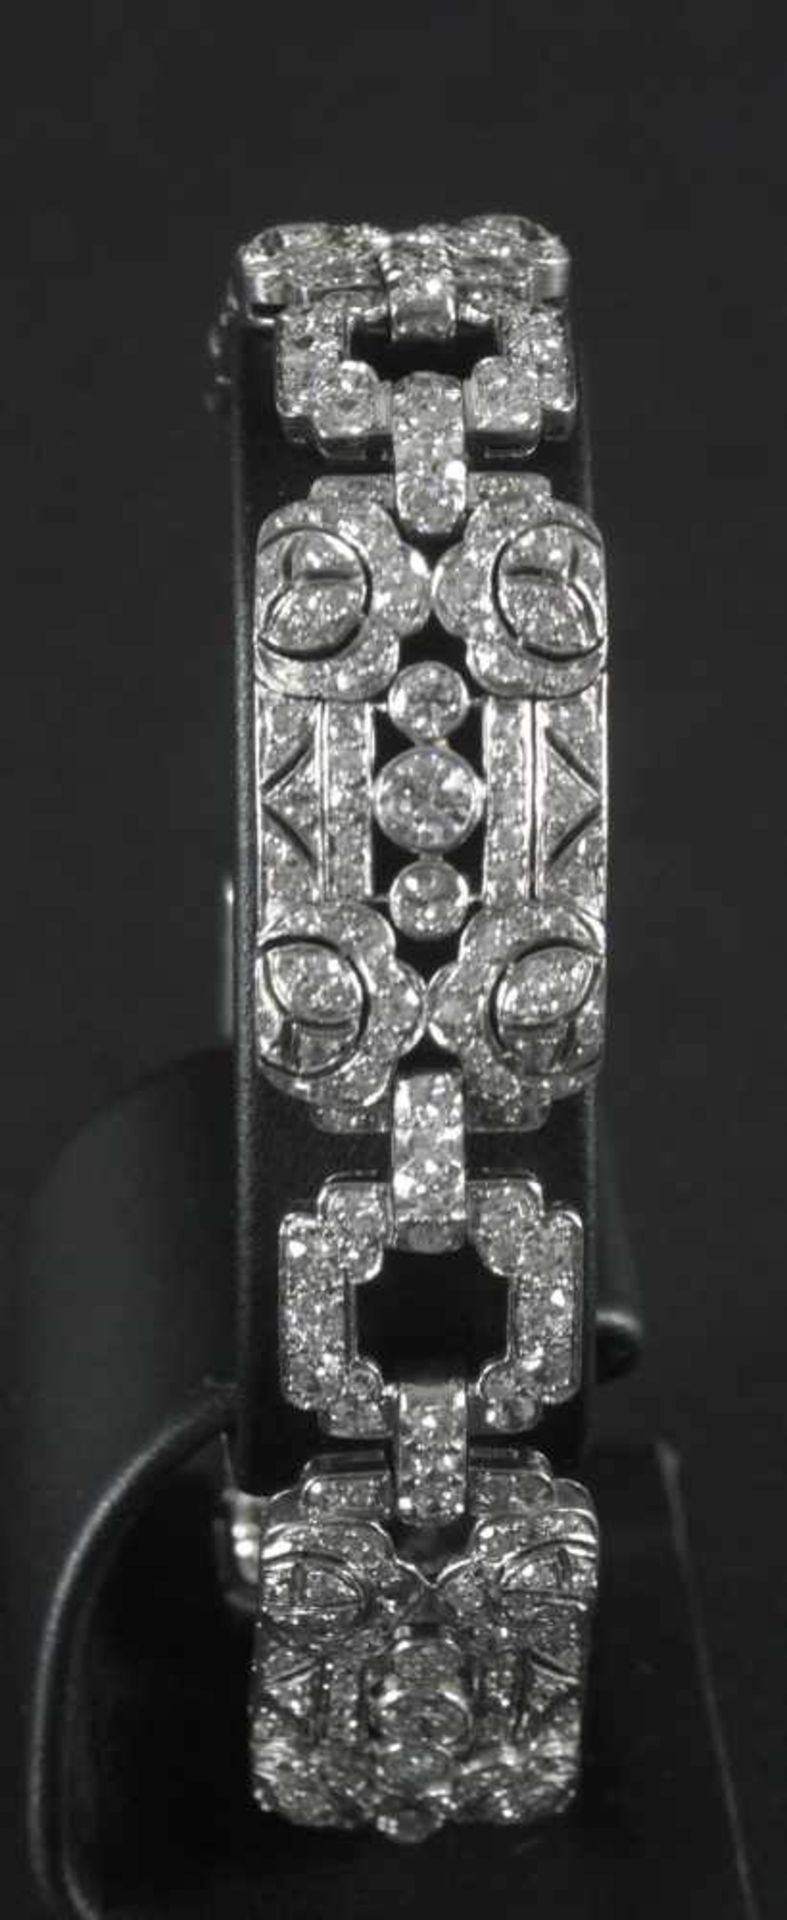 Brillant-Armband, Platin, besetzt mit 450 Diamanten (Brillant, Achtkant, Sechzehnkant) von zus. - Bild 2 aus 2